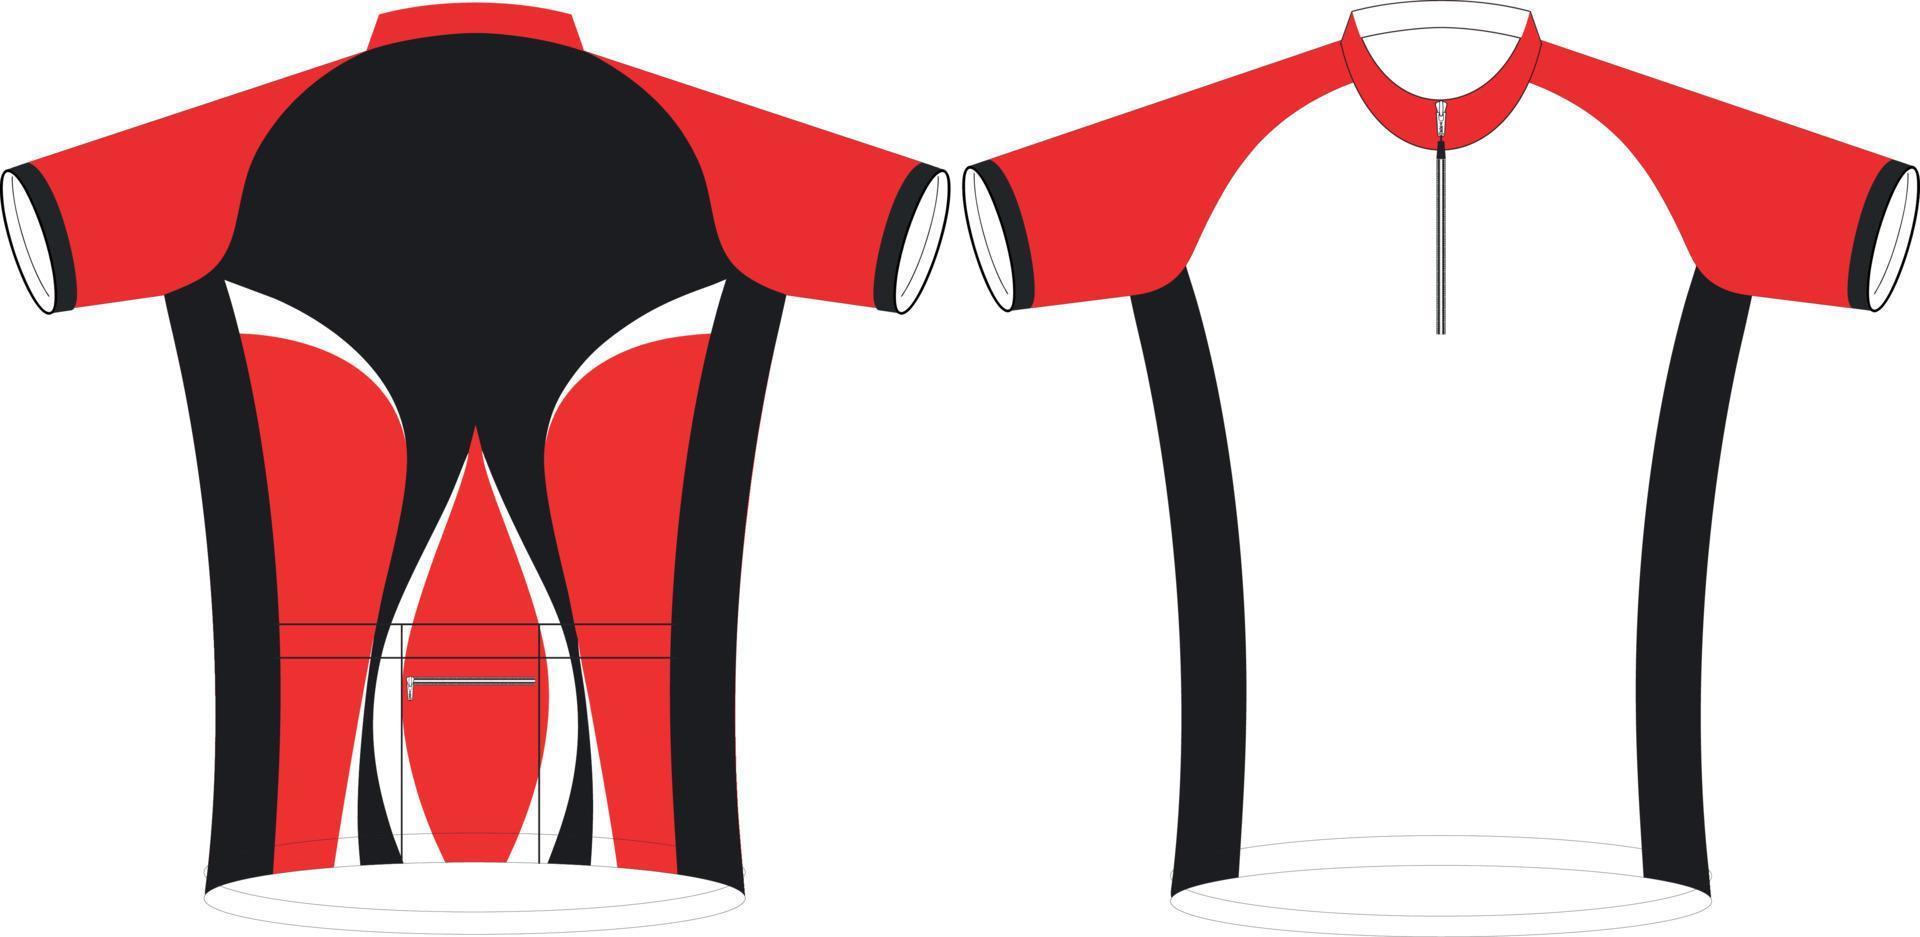 jerseys de ciclismo, plantilla de maqueta deportiva de manga corta, maqueta de chaqueta con cremallera uniforme de ciclismo, archivos vectoriales completos vector